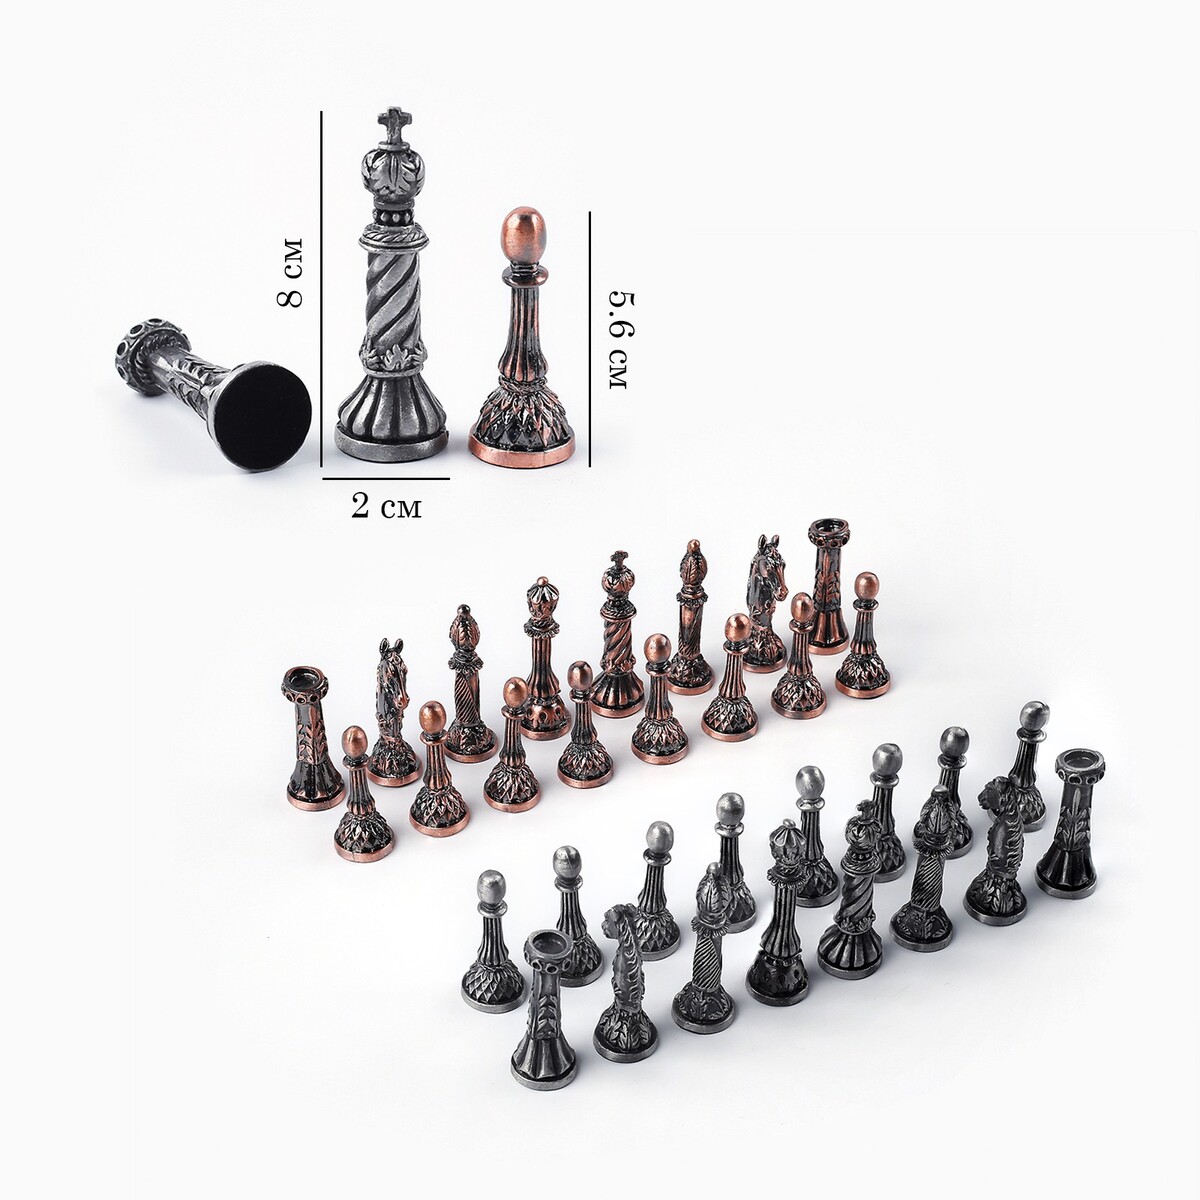 Шахматные фигуры сувенирные, h короля-8 см, пешки-5.6 см, d-2 см дочь короля эльфландии